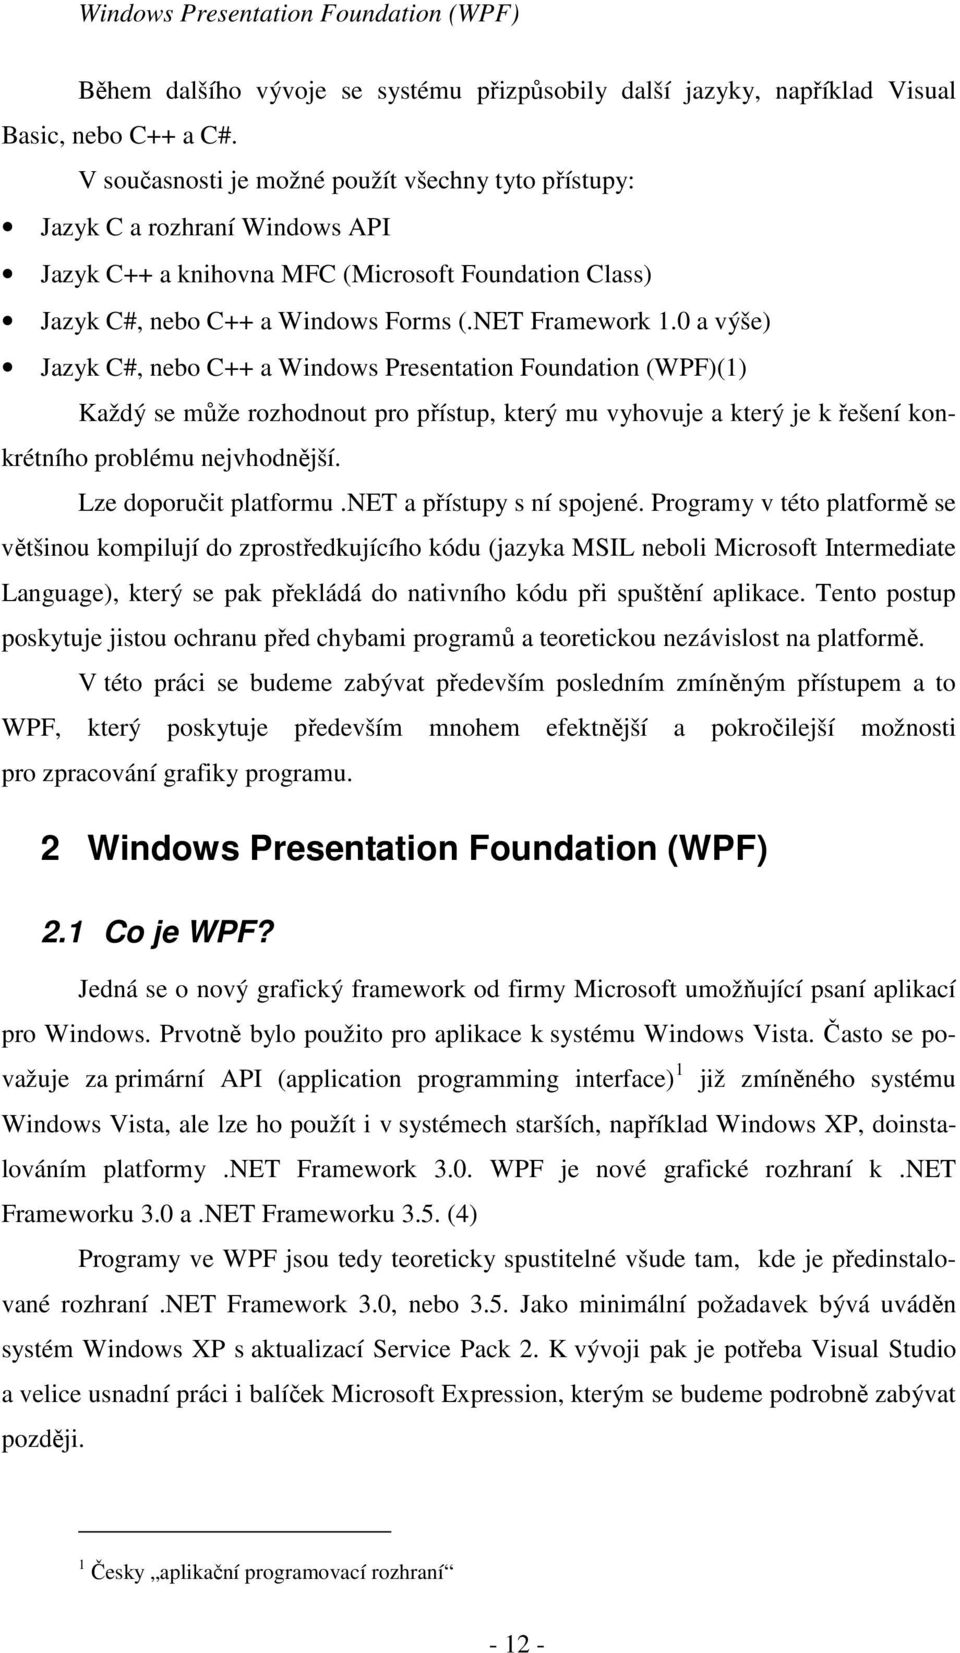 0 a výše) Jazyk C#, nebo C++ a Windows Presentation Foundation (WPF)(1) Každý se může rozhodnout pro přístup, který mu vyhovuje a který je k řešení konkrétního problému nejvhodnější.